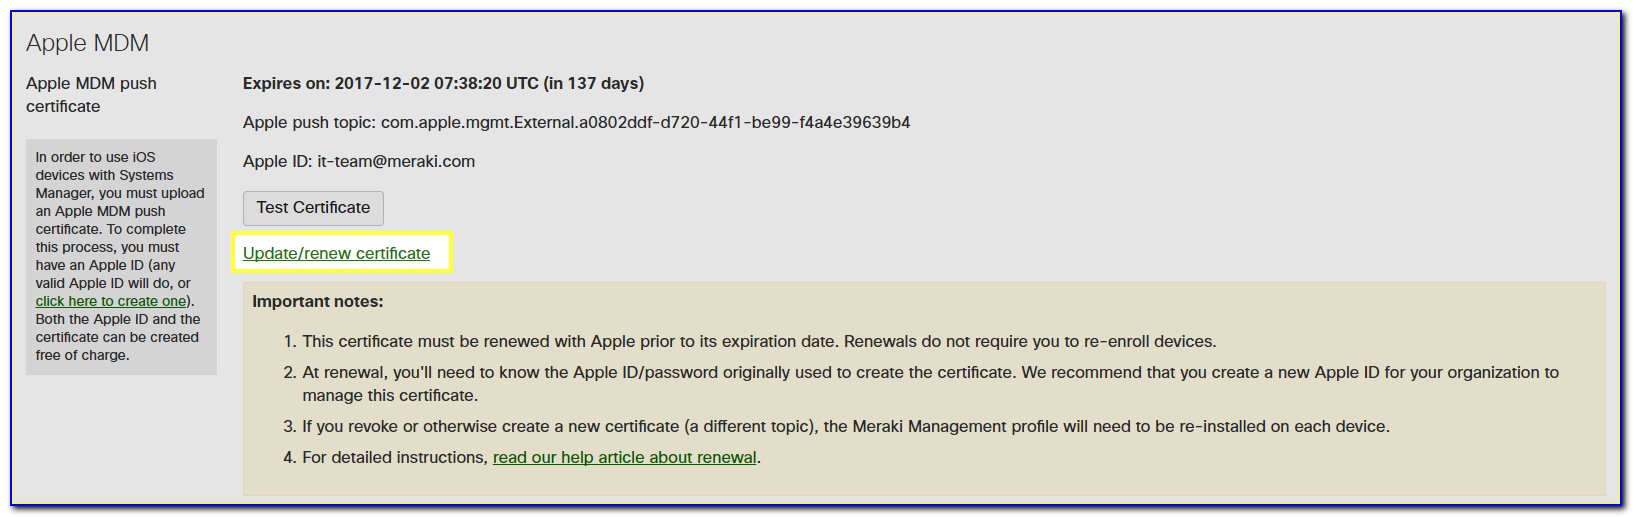 Apple Mdm Certificate Mobileiron